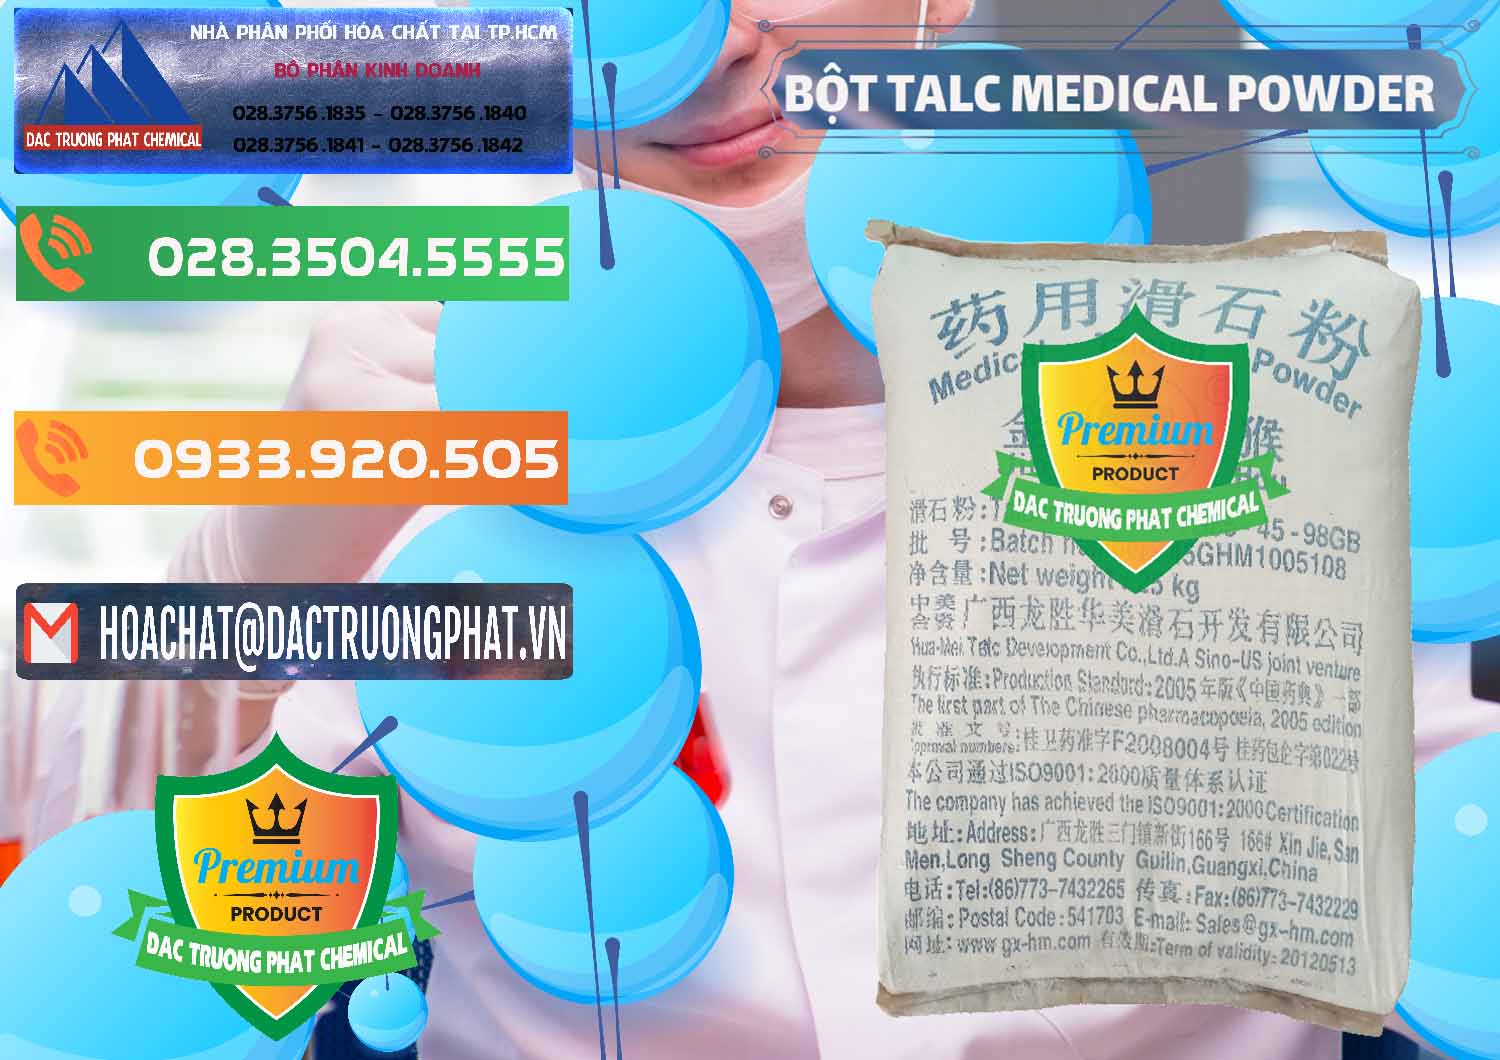 Cty bán ( cung ứng ) Bột Talc Medical Powder Trung Quốc China - 0036 - Nơi phân phối _ cung ứng hóa chất tại TP.HCM - hoachatxulynuoc.com.vn